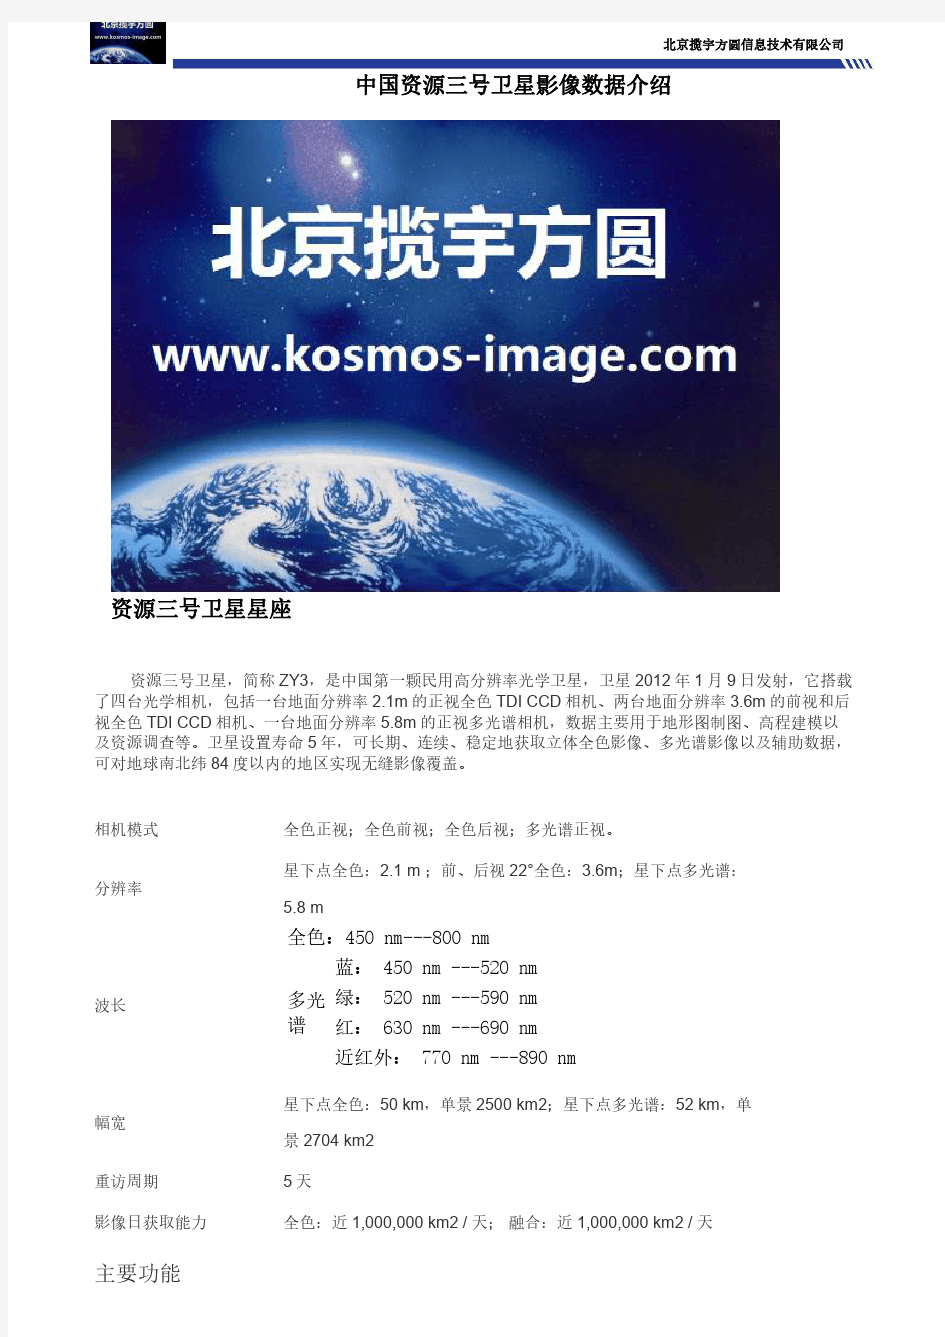 中国资源三号卫星影像数据介绍